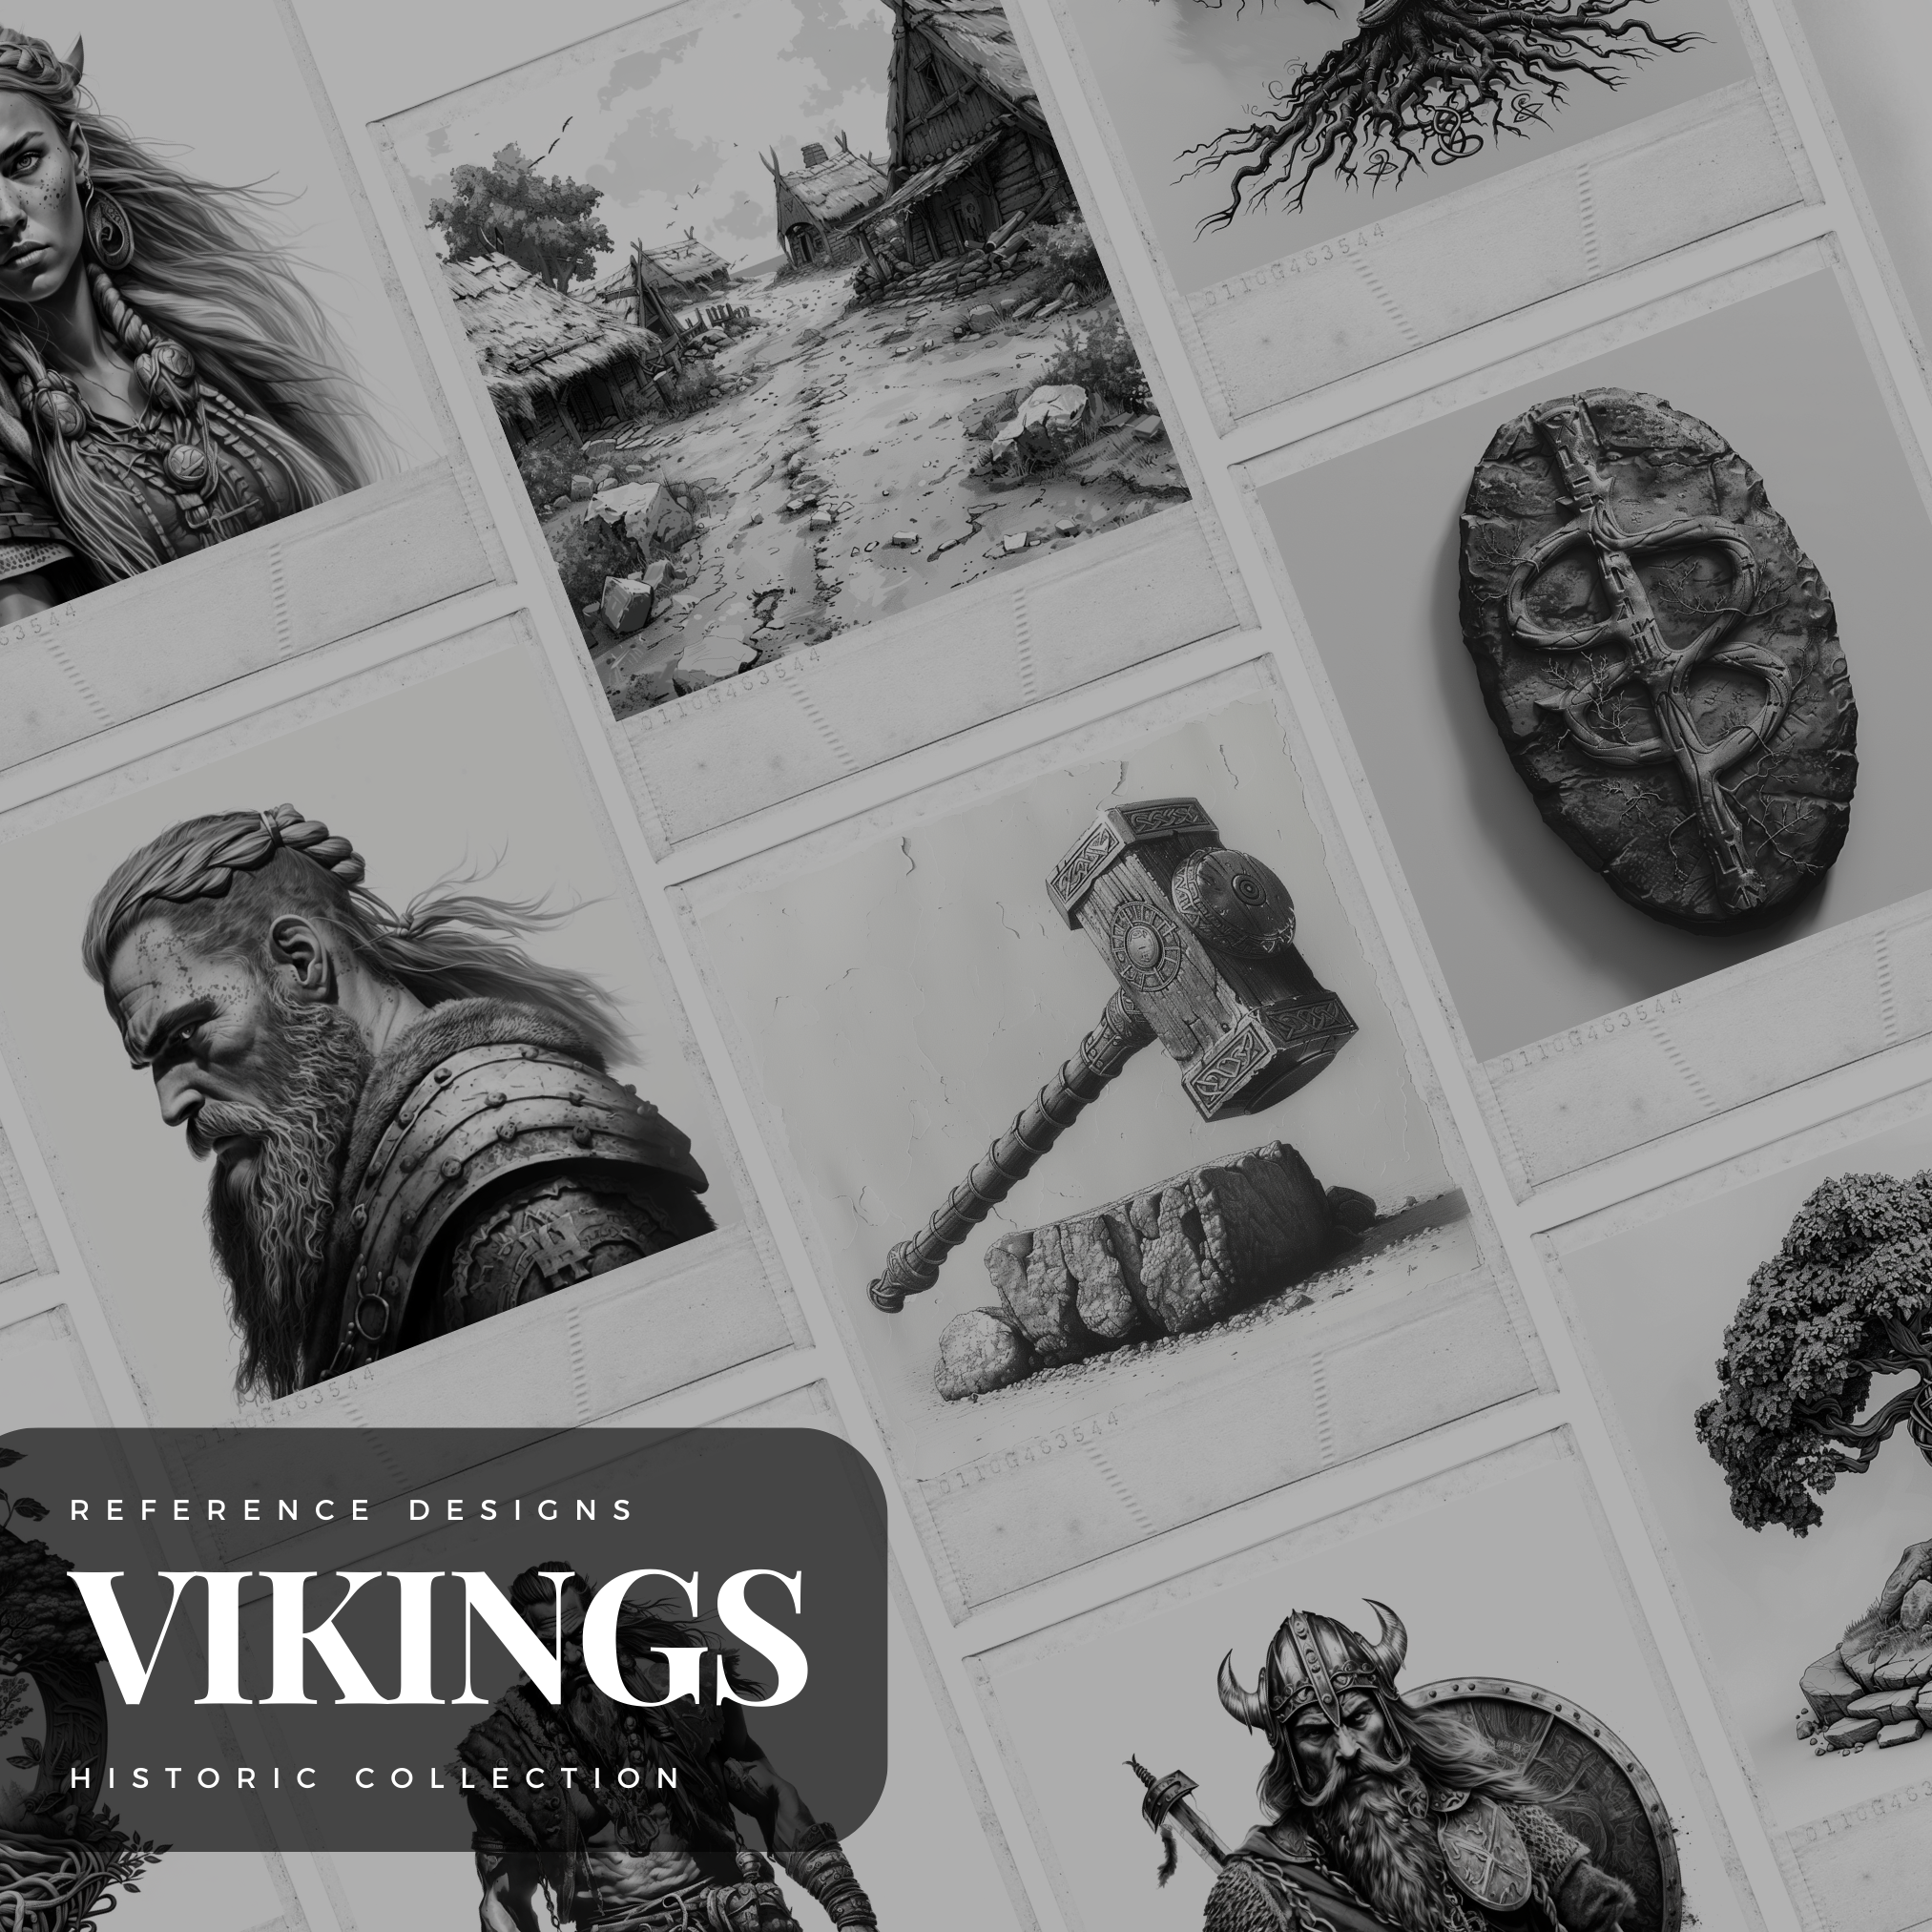 Viking Era Digital Design Collection: 100 Procreate & Sketchbook Images